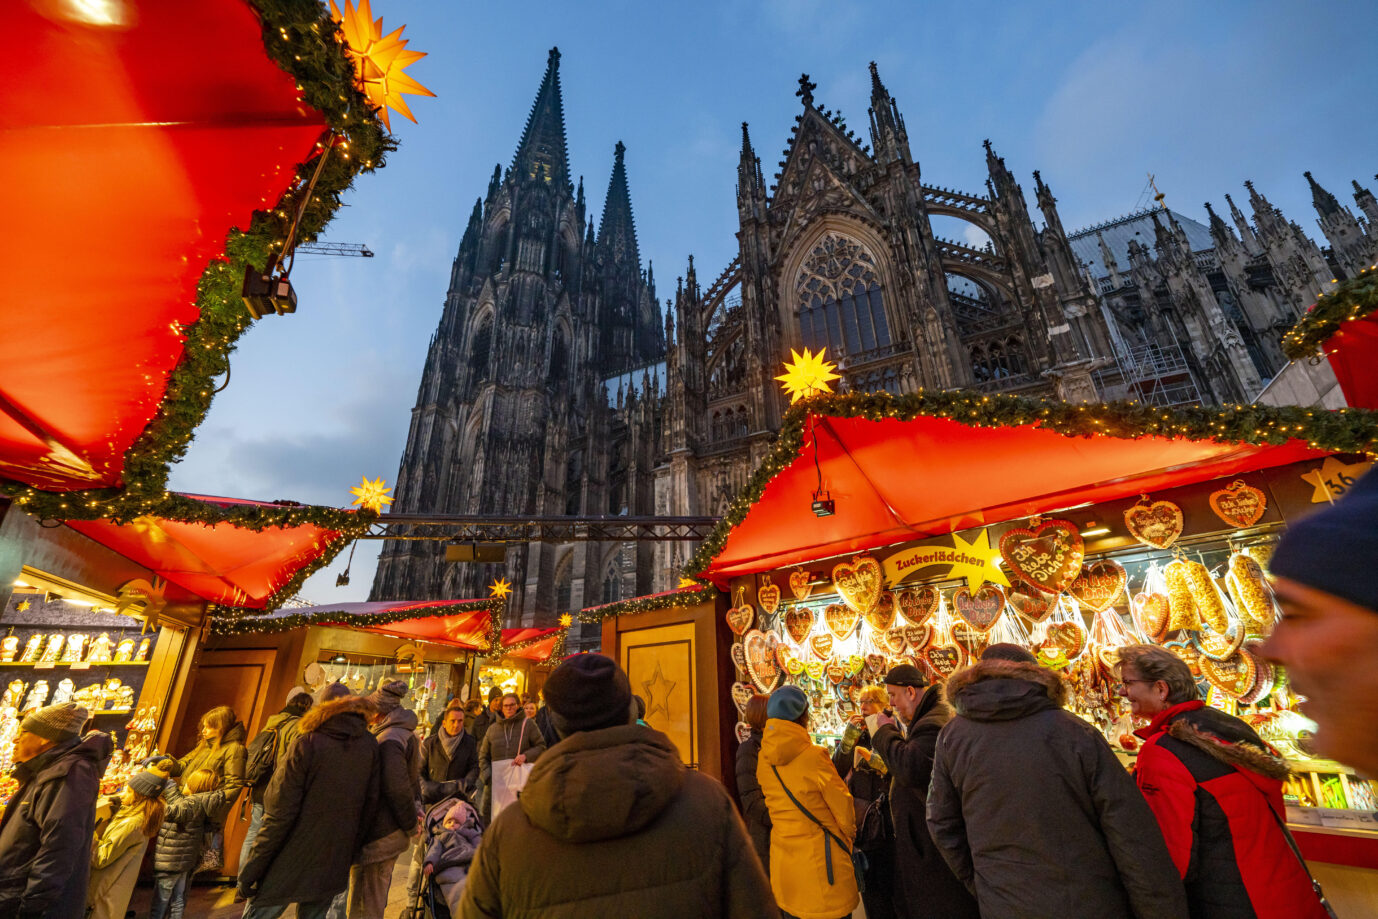 Weihnachtsmarkt auf dem Roncallli Platz, direkt am Kölner Dom, in der Altstadt von Köln, NRW, Deutschland. Der Weihnachtsmarkt war potentielles Ziel für den Terroranschlag.